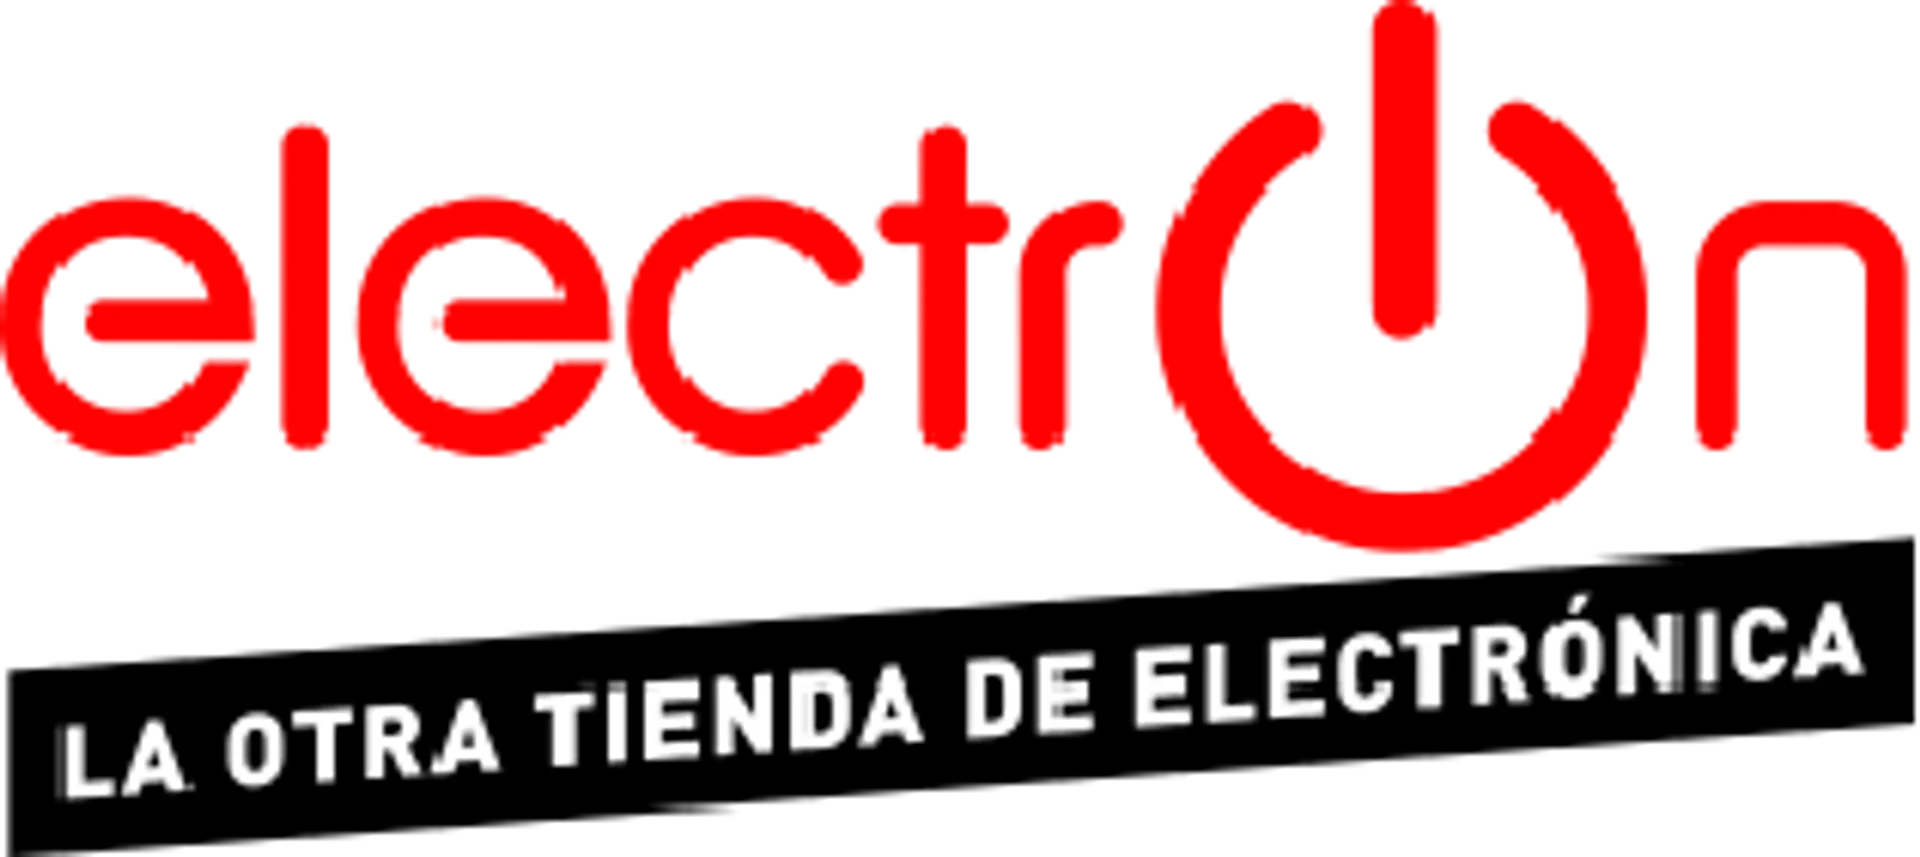 TIENDAS ELÉCTRON logo de catálogo